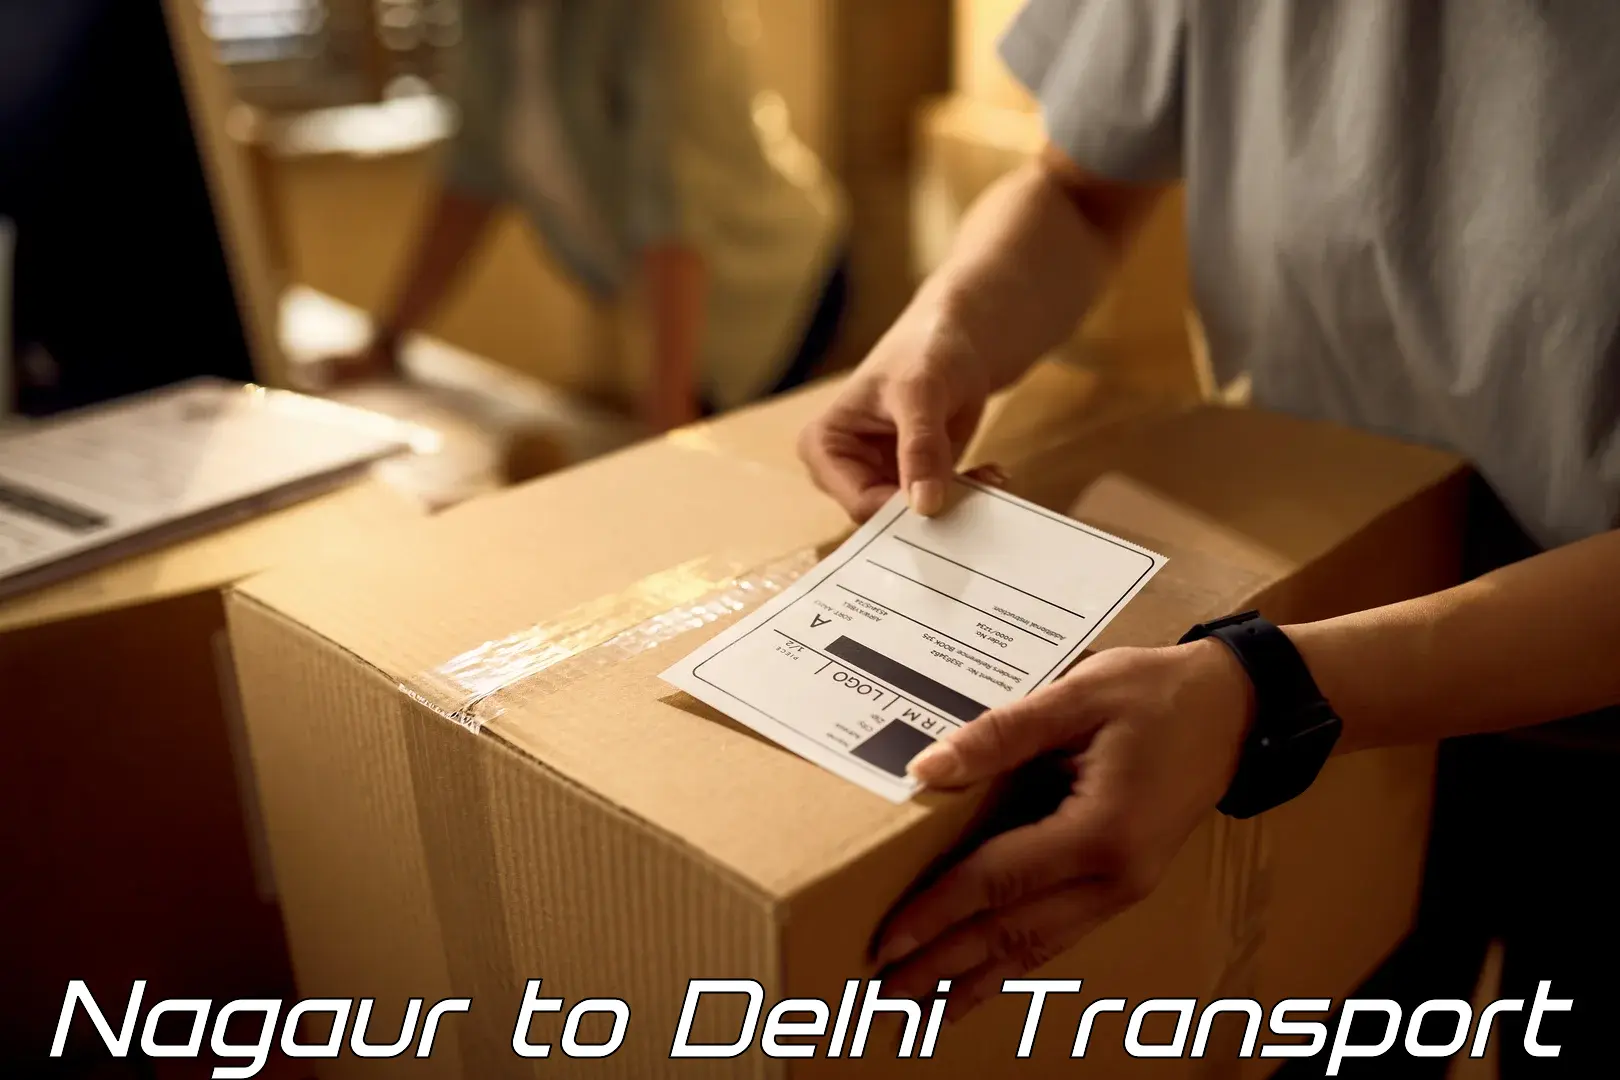 Parcel transport services Nagaur to NIT Delhi